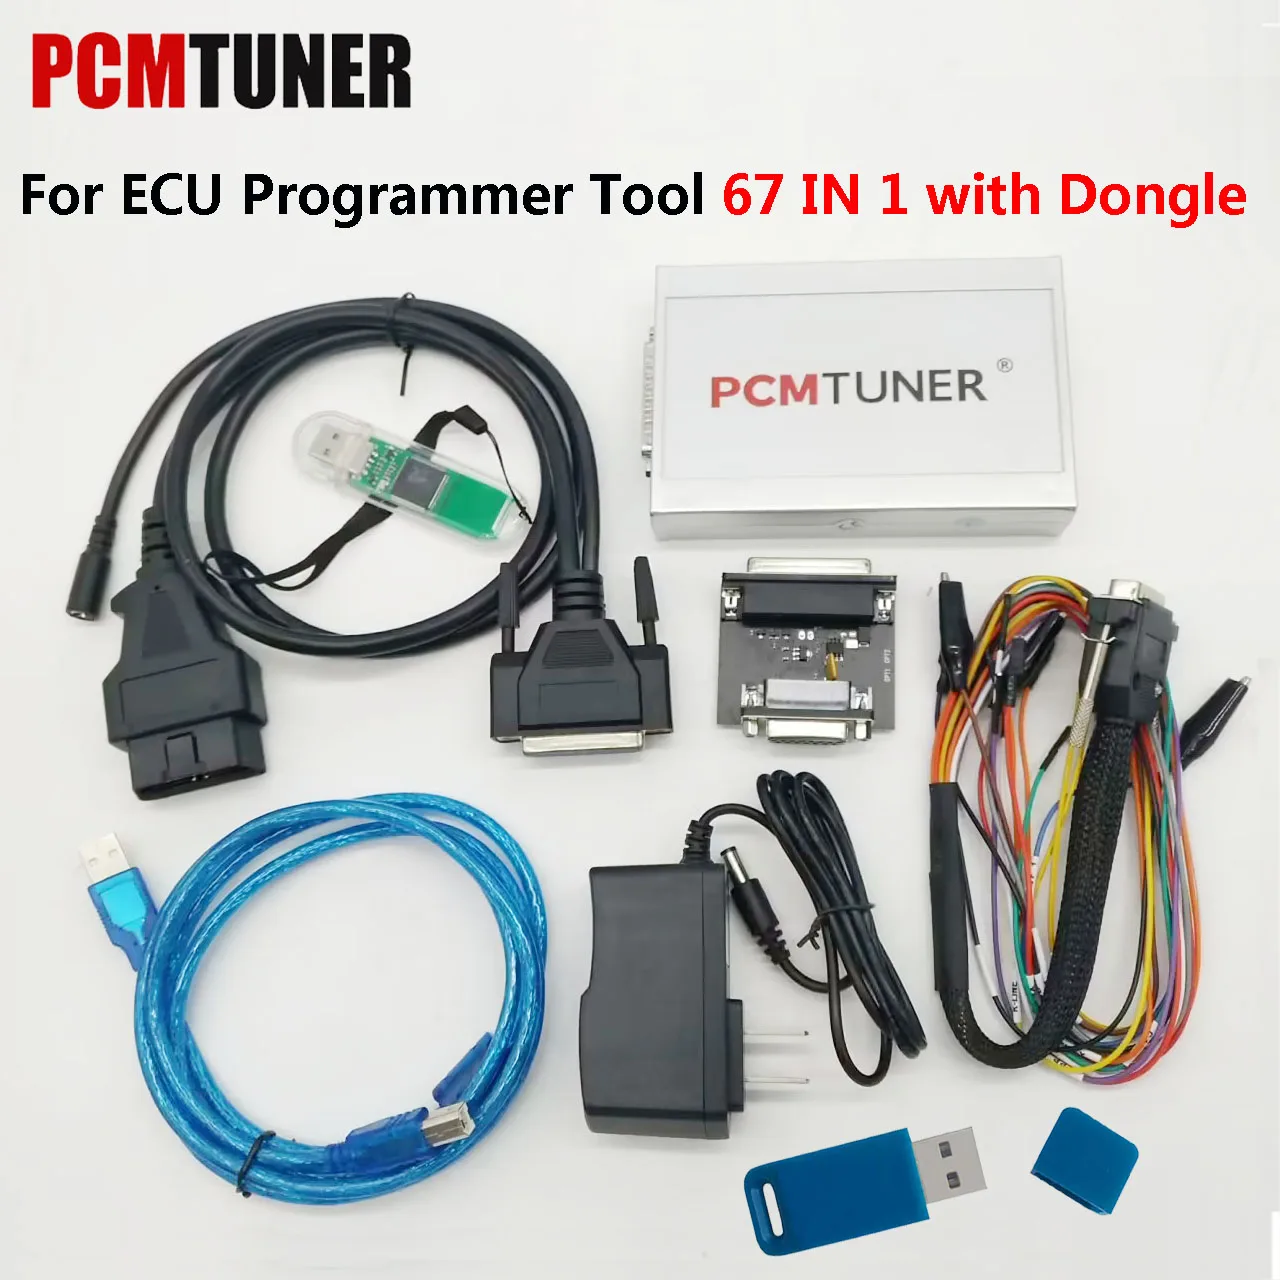 

Программатор ECU pcmтюнер V1.2.7 PCM, тюнер 67 модулей в 1, полный комплект программного обеспечения, дополнительные разрешения, обновленная версия с новым ключом